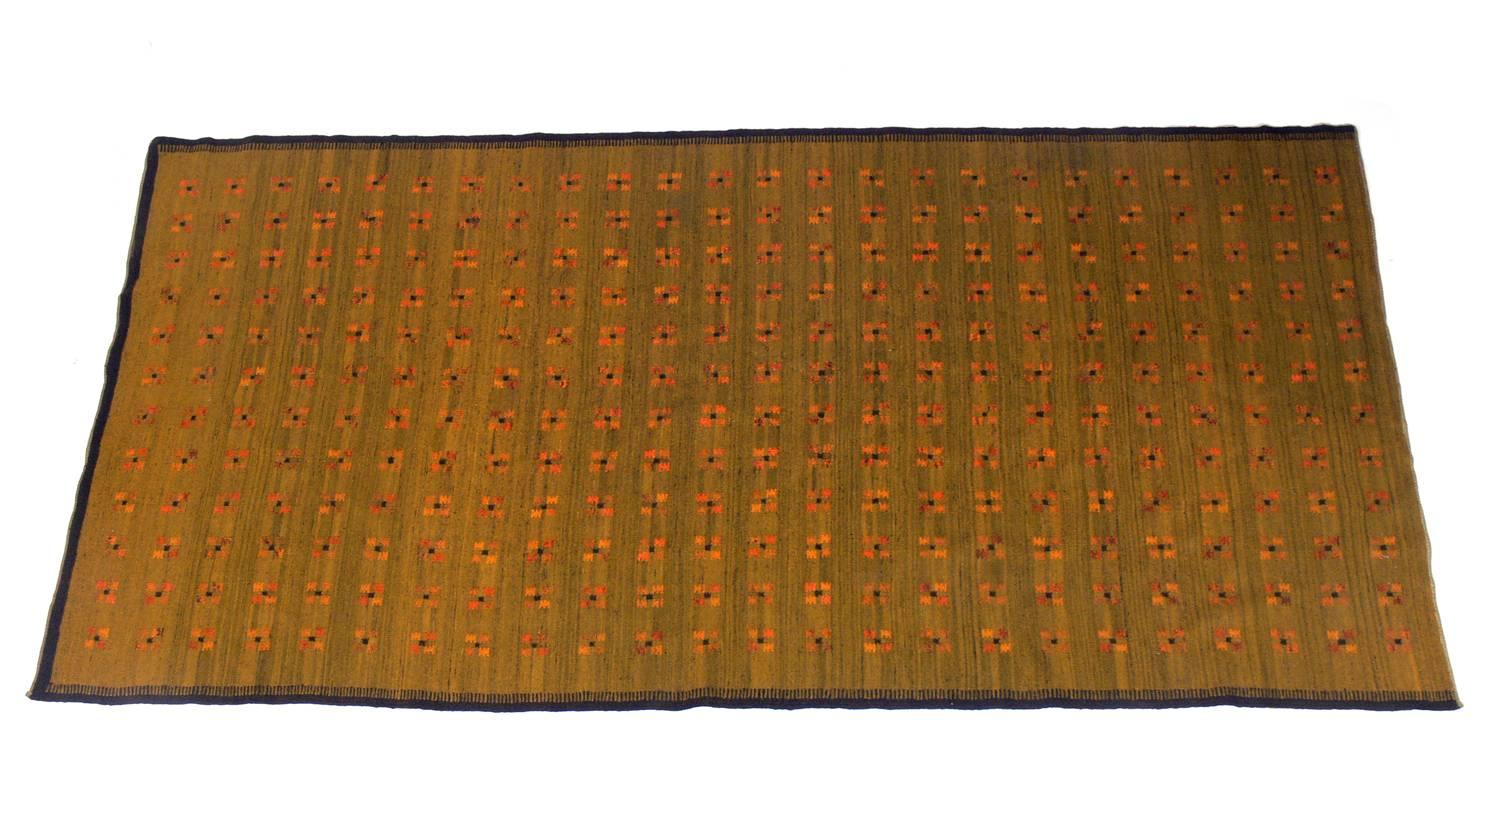 Tapis moderne danois à tissage plat, probablement suédois, vers les années 1950. Joli tissage serré avec un beau motif en jaune vermillon sur un champ vert. Ce tapis est d'une taille impressionnante : 10,5' x 5'.